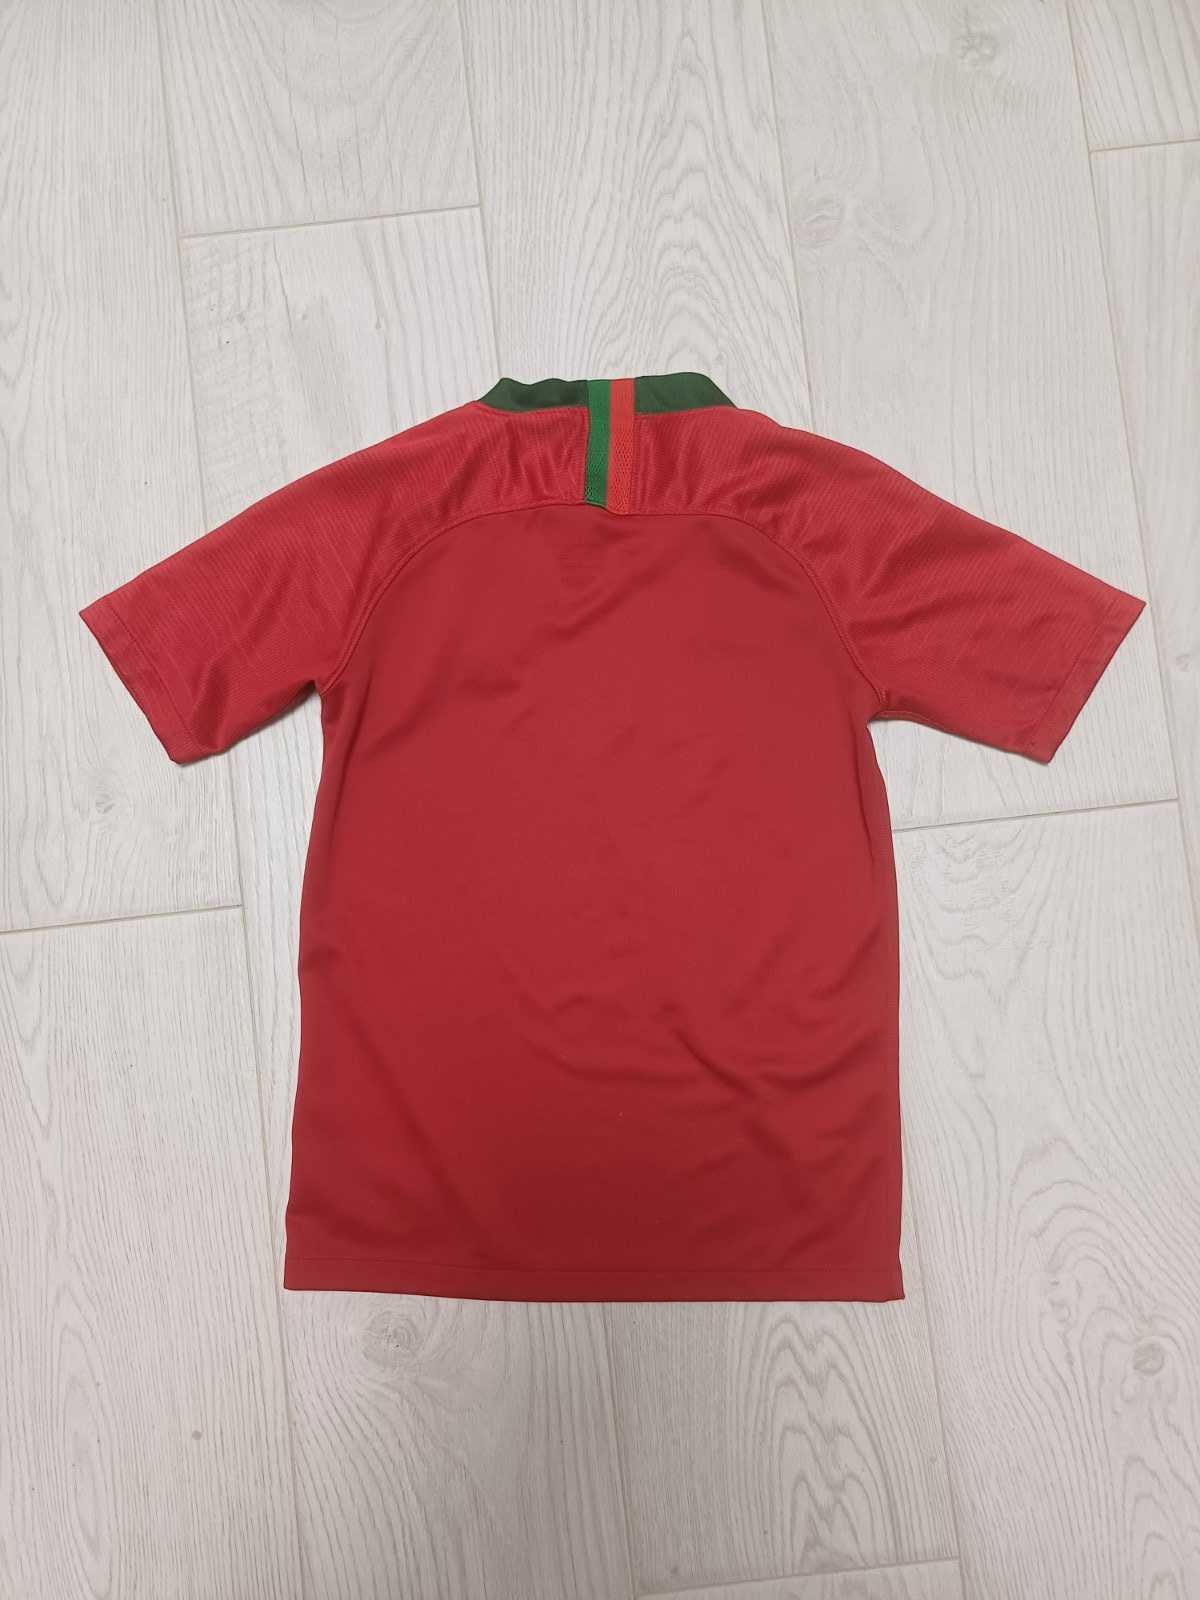 Nike dri-fit Футбольная футболка Найк на 10-12 лет , оригинал